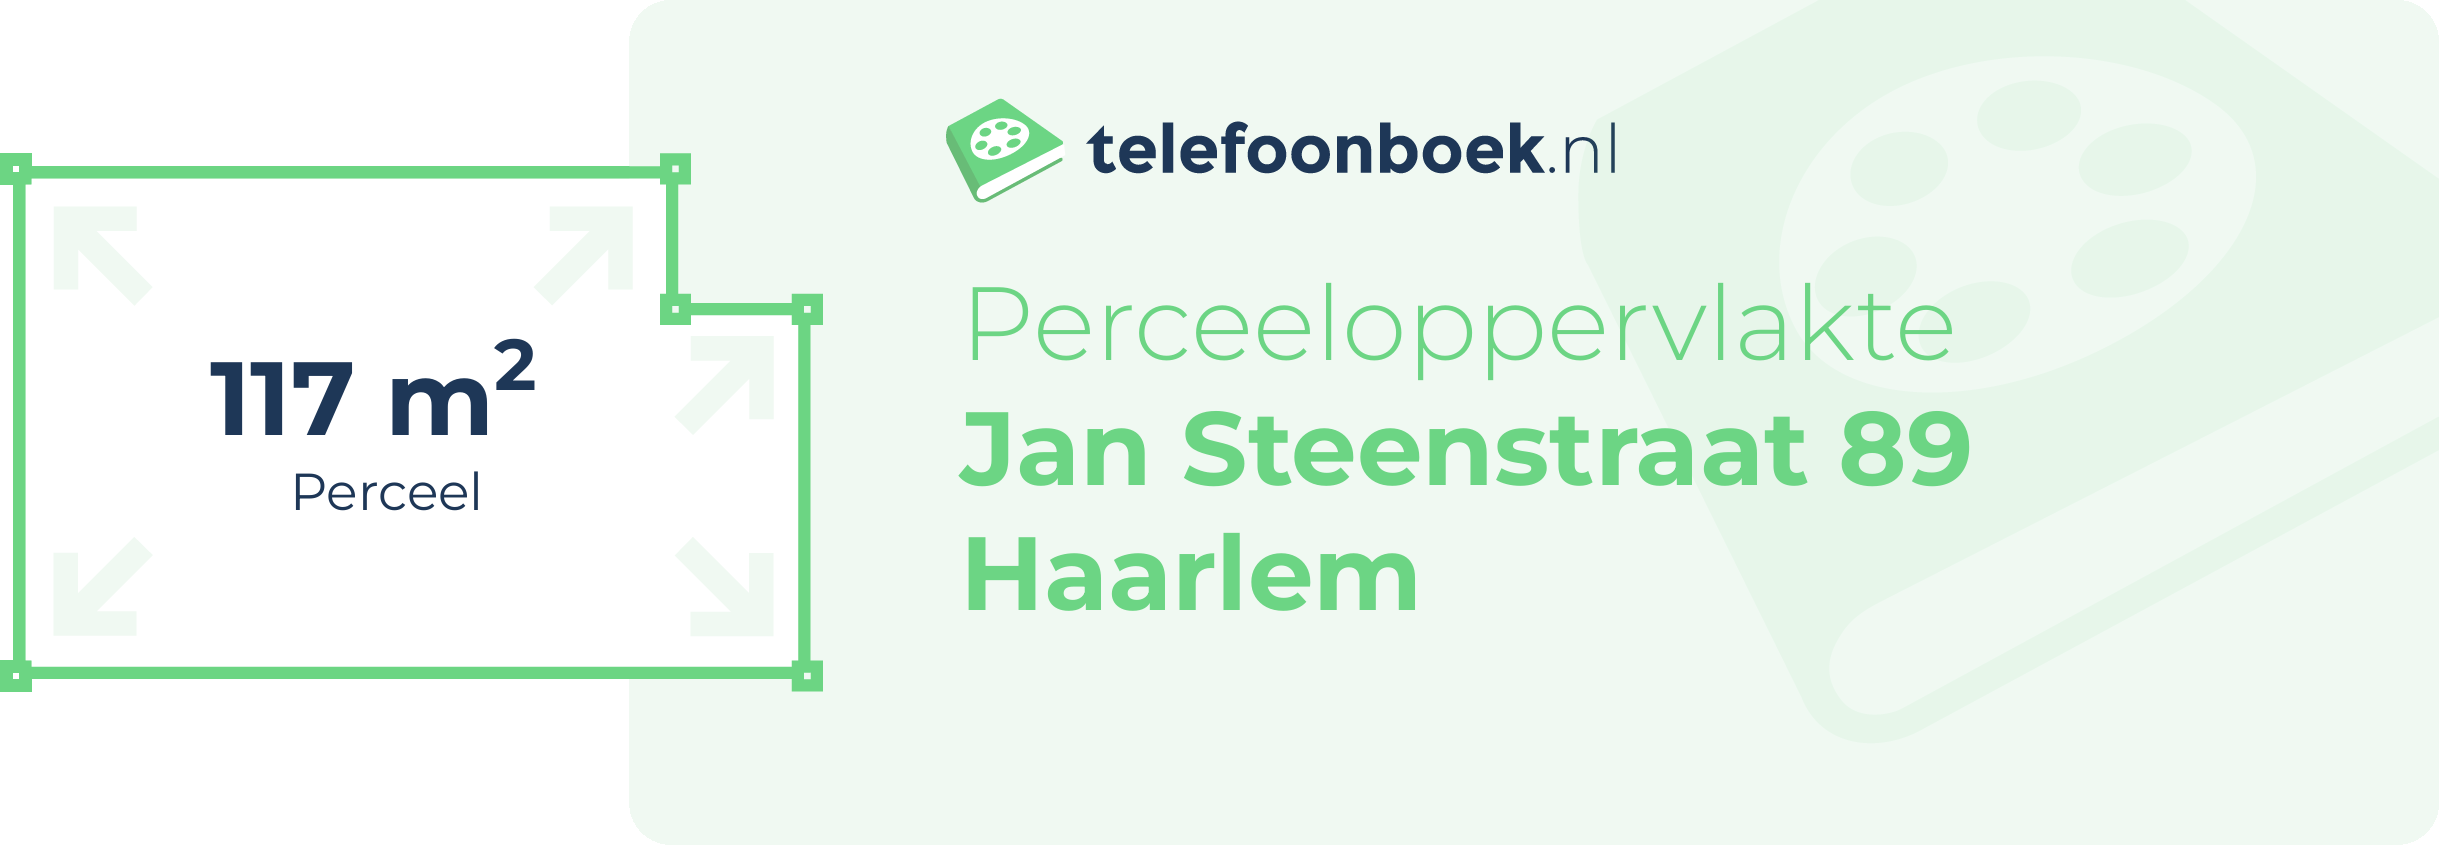 Perceeloppervlakte Jan Steenstraat 89 Haarlem